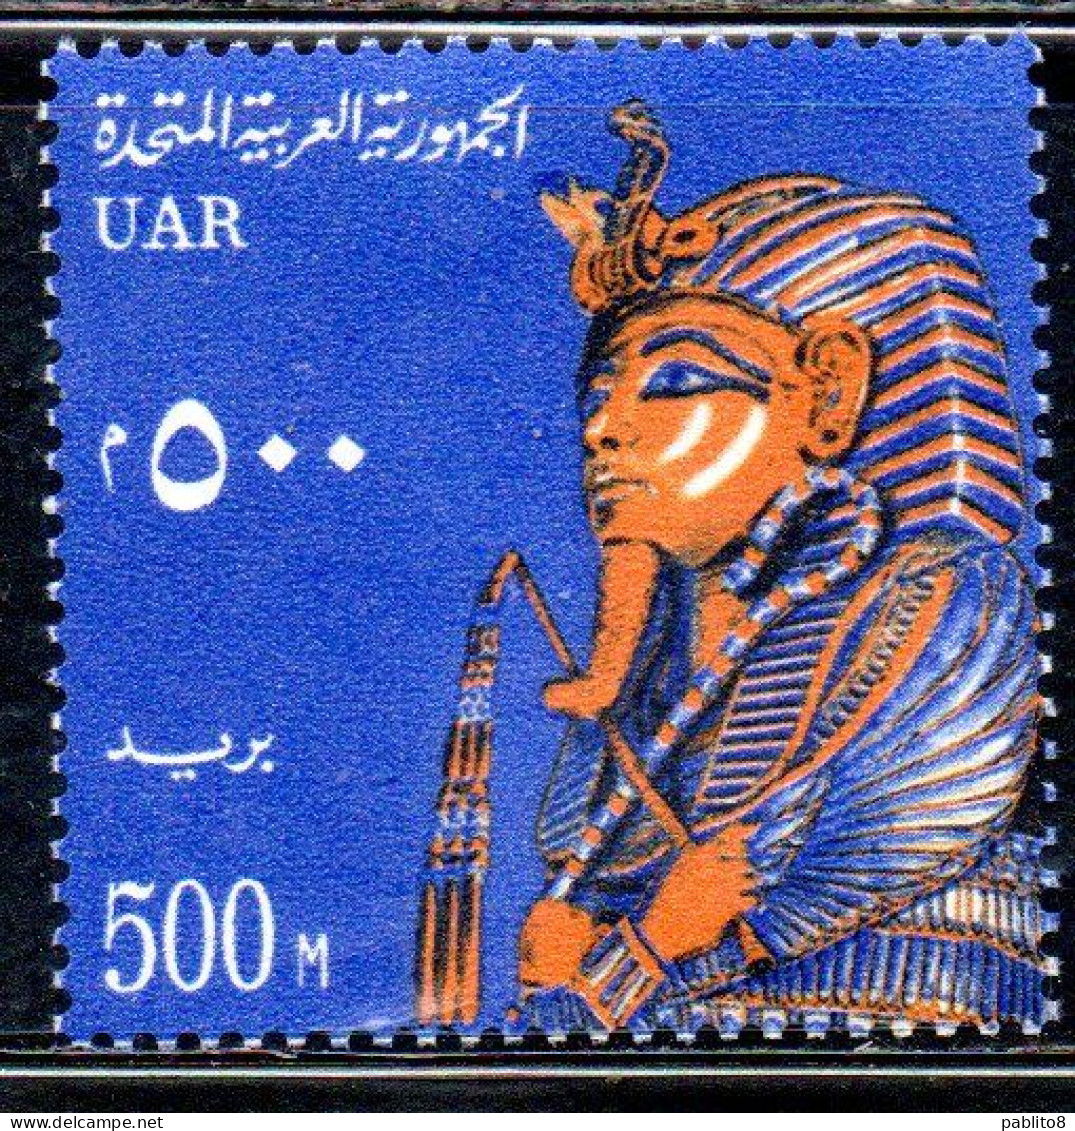 UAR EGYPT EGITTO 1964 1967 FUNERARI MASK C.F.TUTANKHAMEN 500m MNH - Neufs